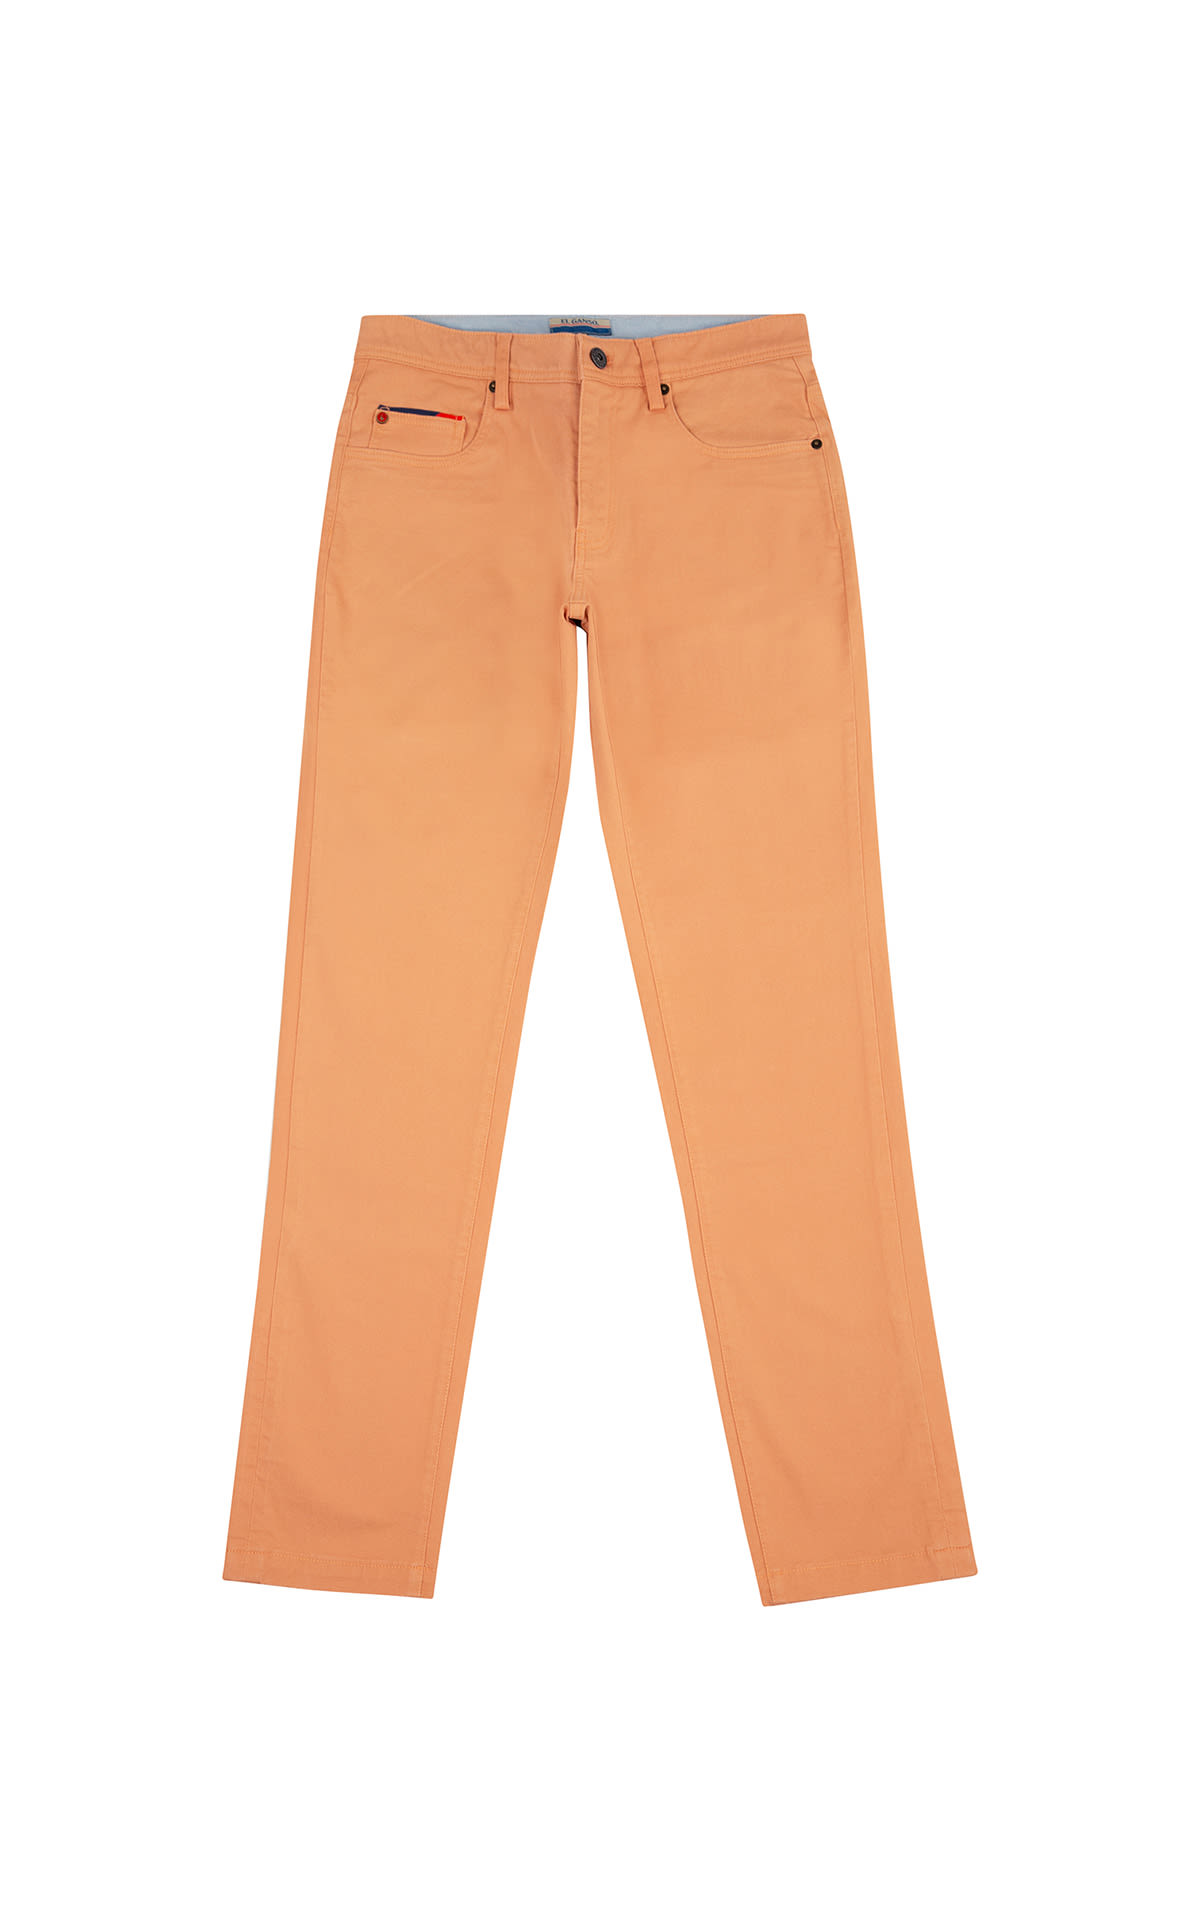 Orange jeans from El Ganso